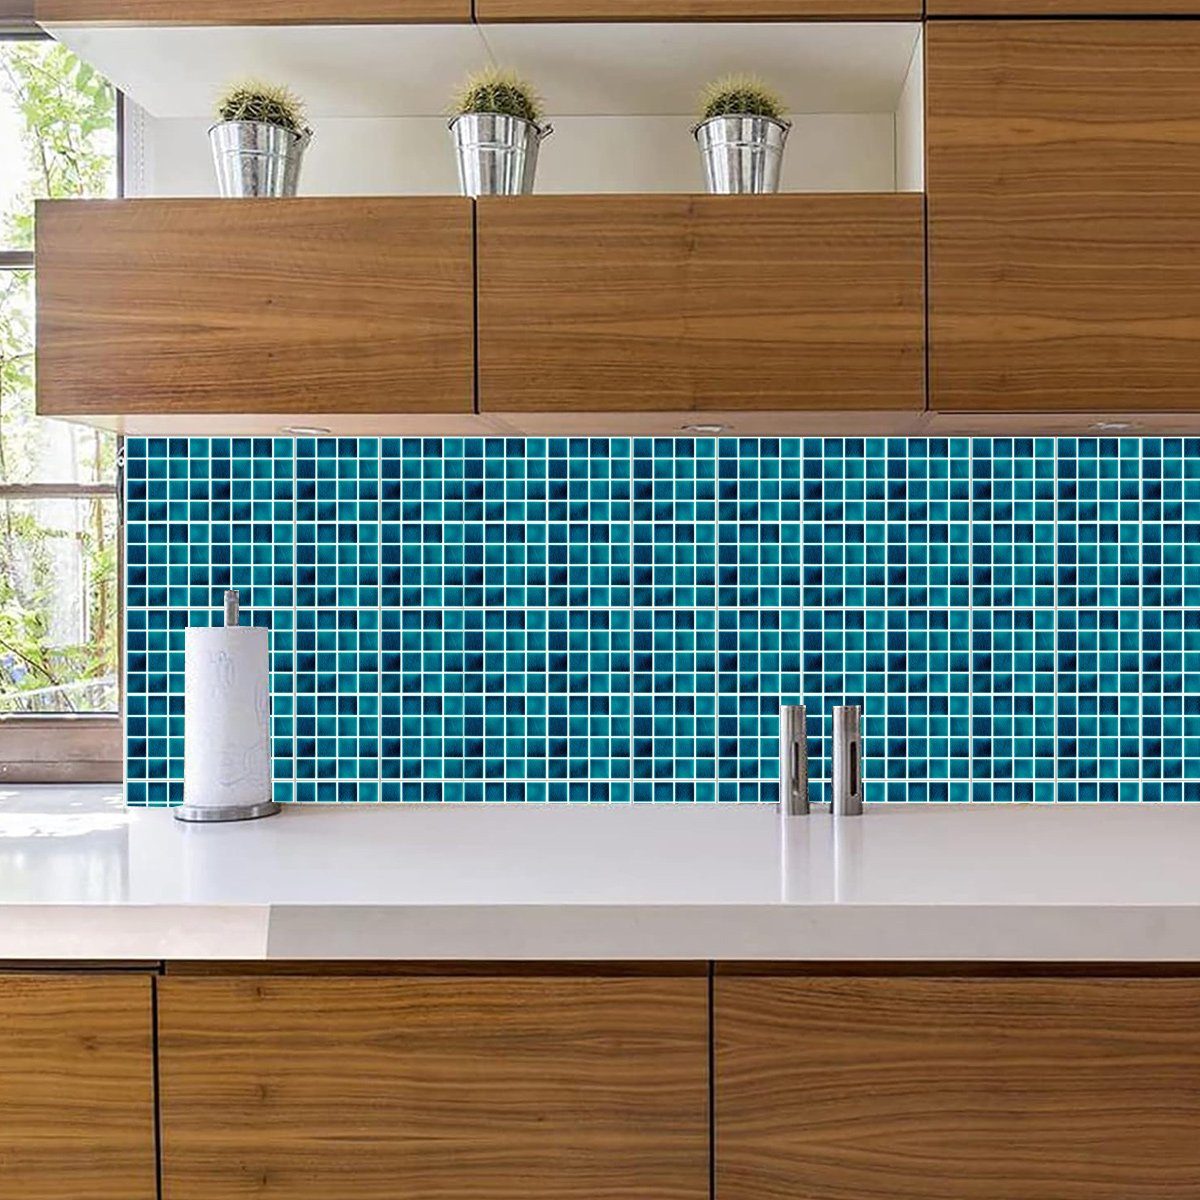 Jormftte Wandtattoo Wandfliesen Aufkleber,Stein-Effekt-Mosaik Fliesenaufkleber Küche Mehrfarbig 1 für